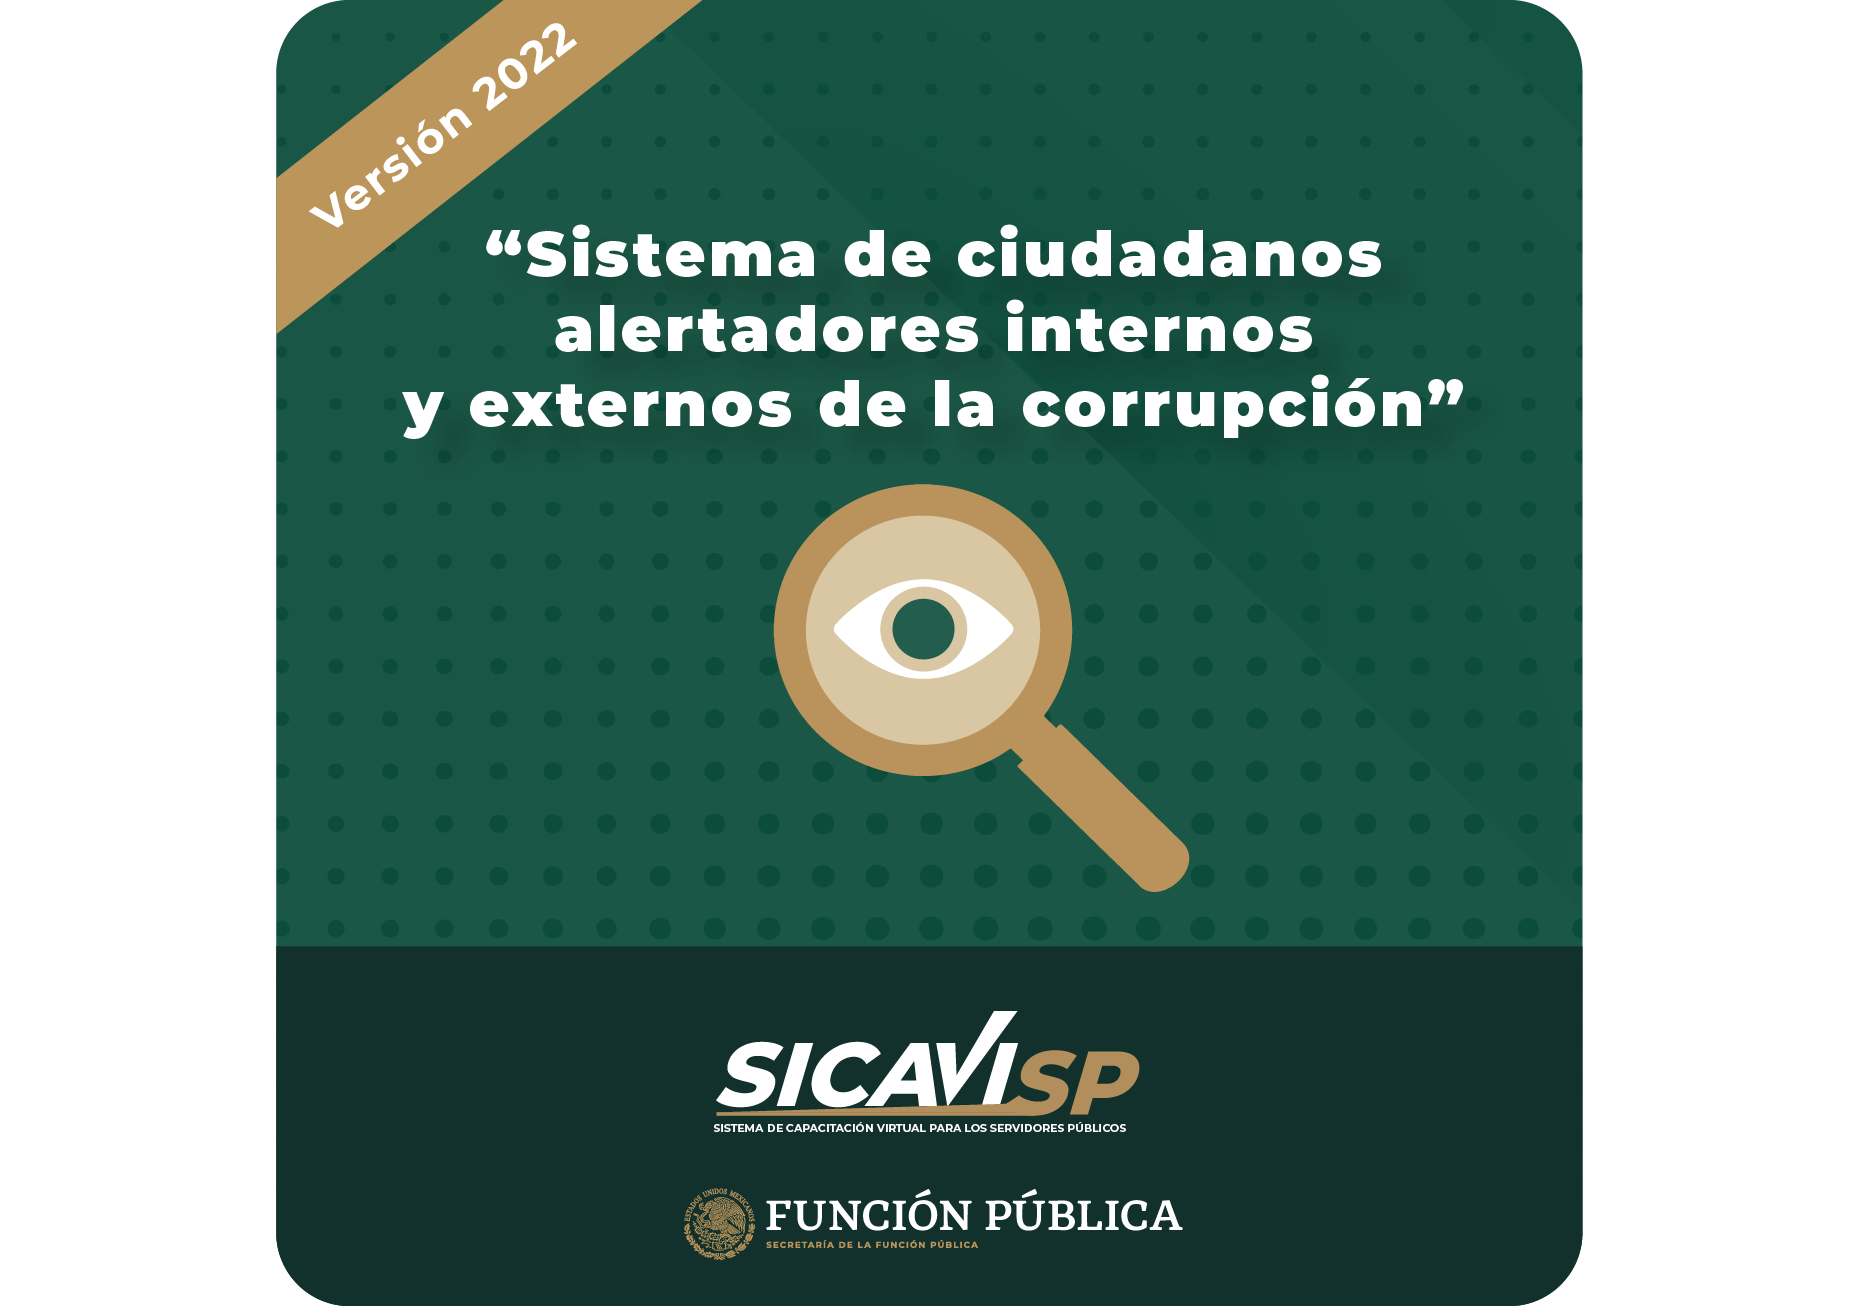 Sistema de ciudadanos alertadores internos y externos de la corrupción